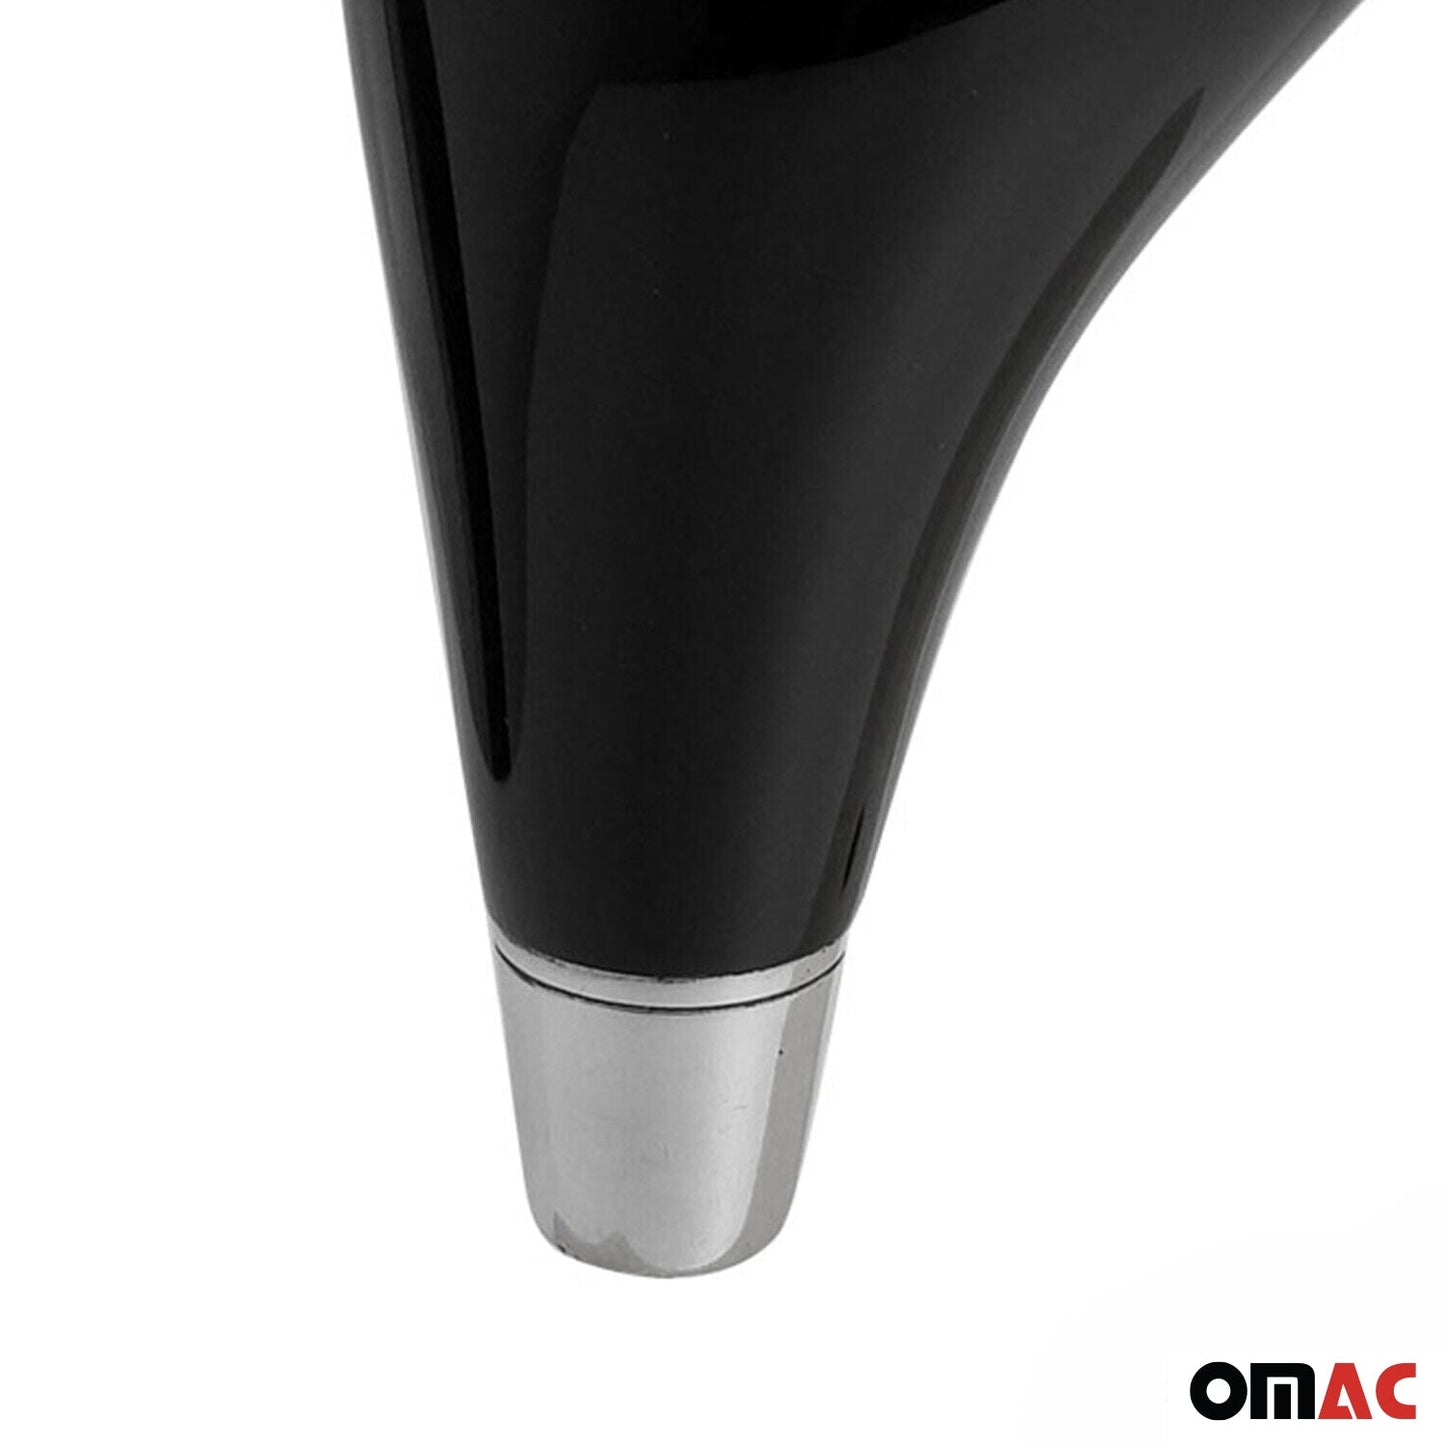 OMAC For Mercedes-Benz S Class Gear Shift Knob Shifting Handle Piano Black 4756501PB-4